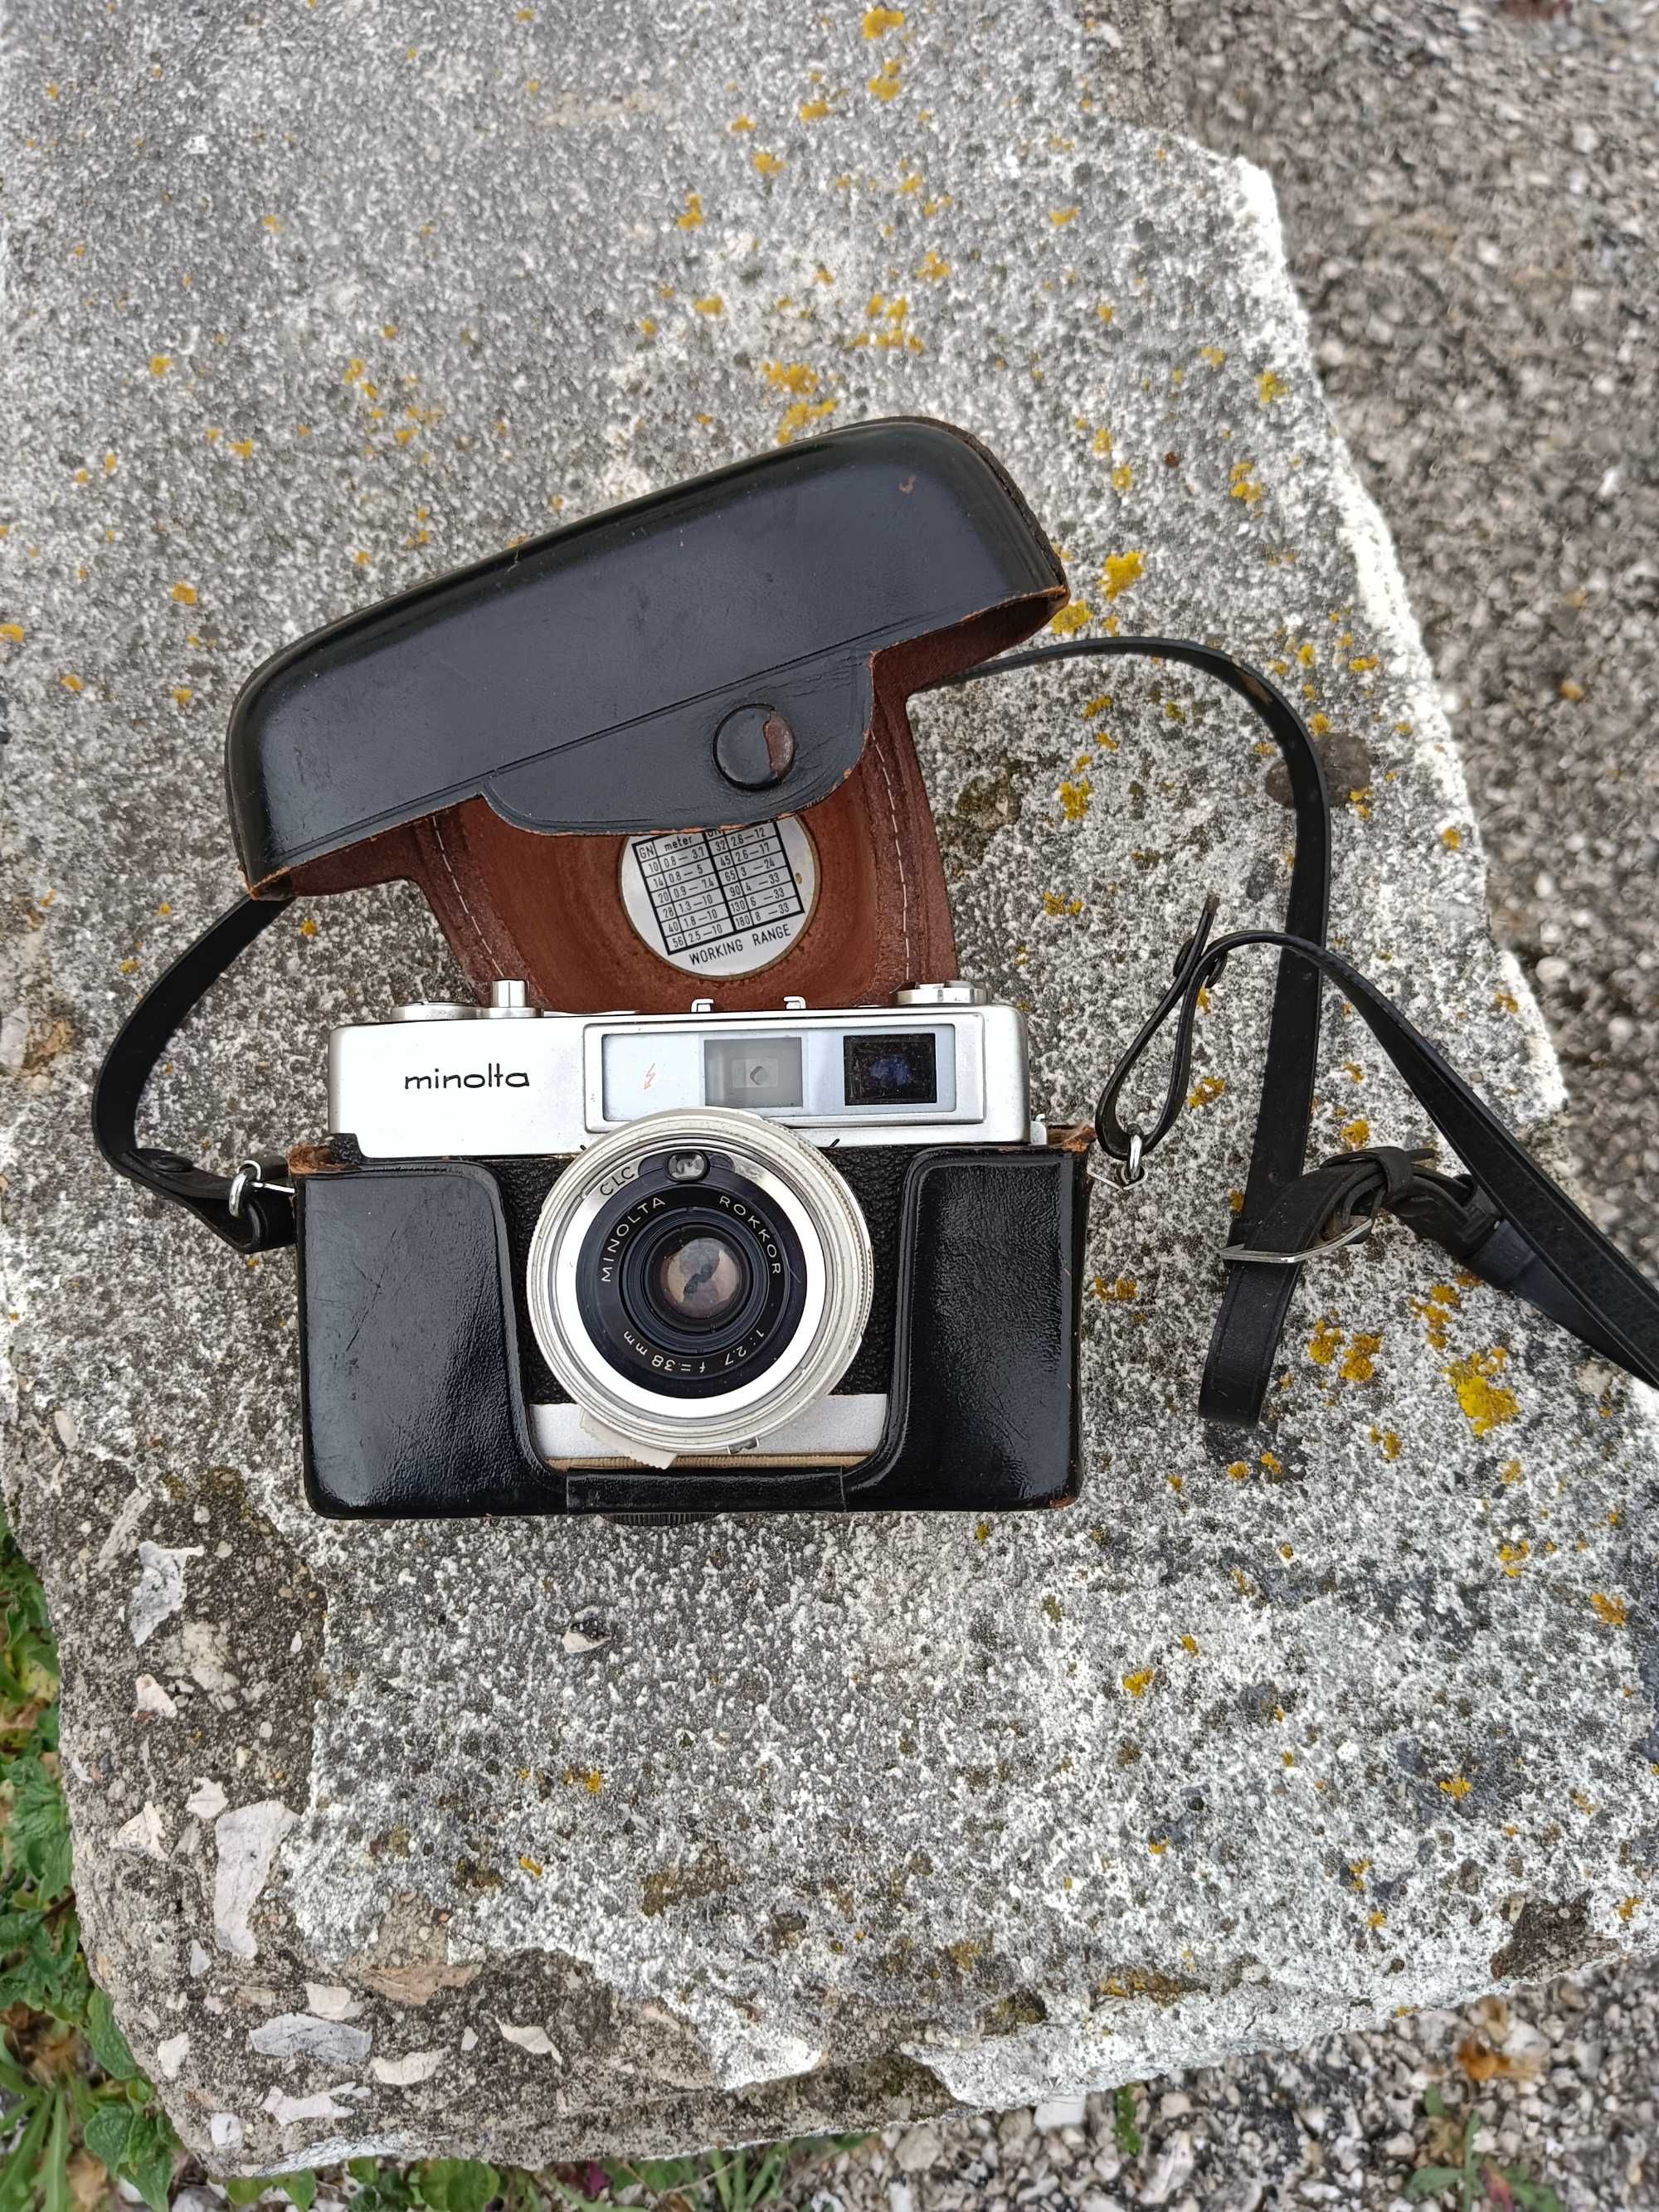 Maquina fotográfica Minolta  AL-F  com estojo em pele